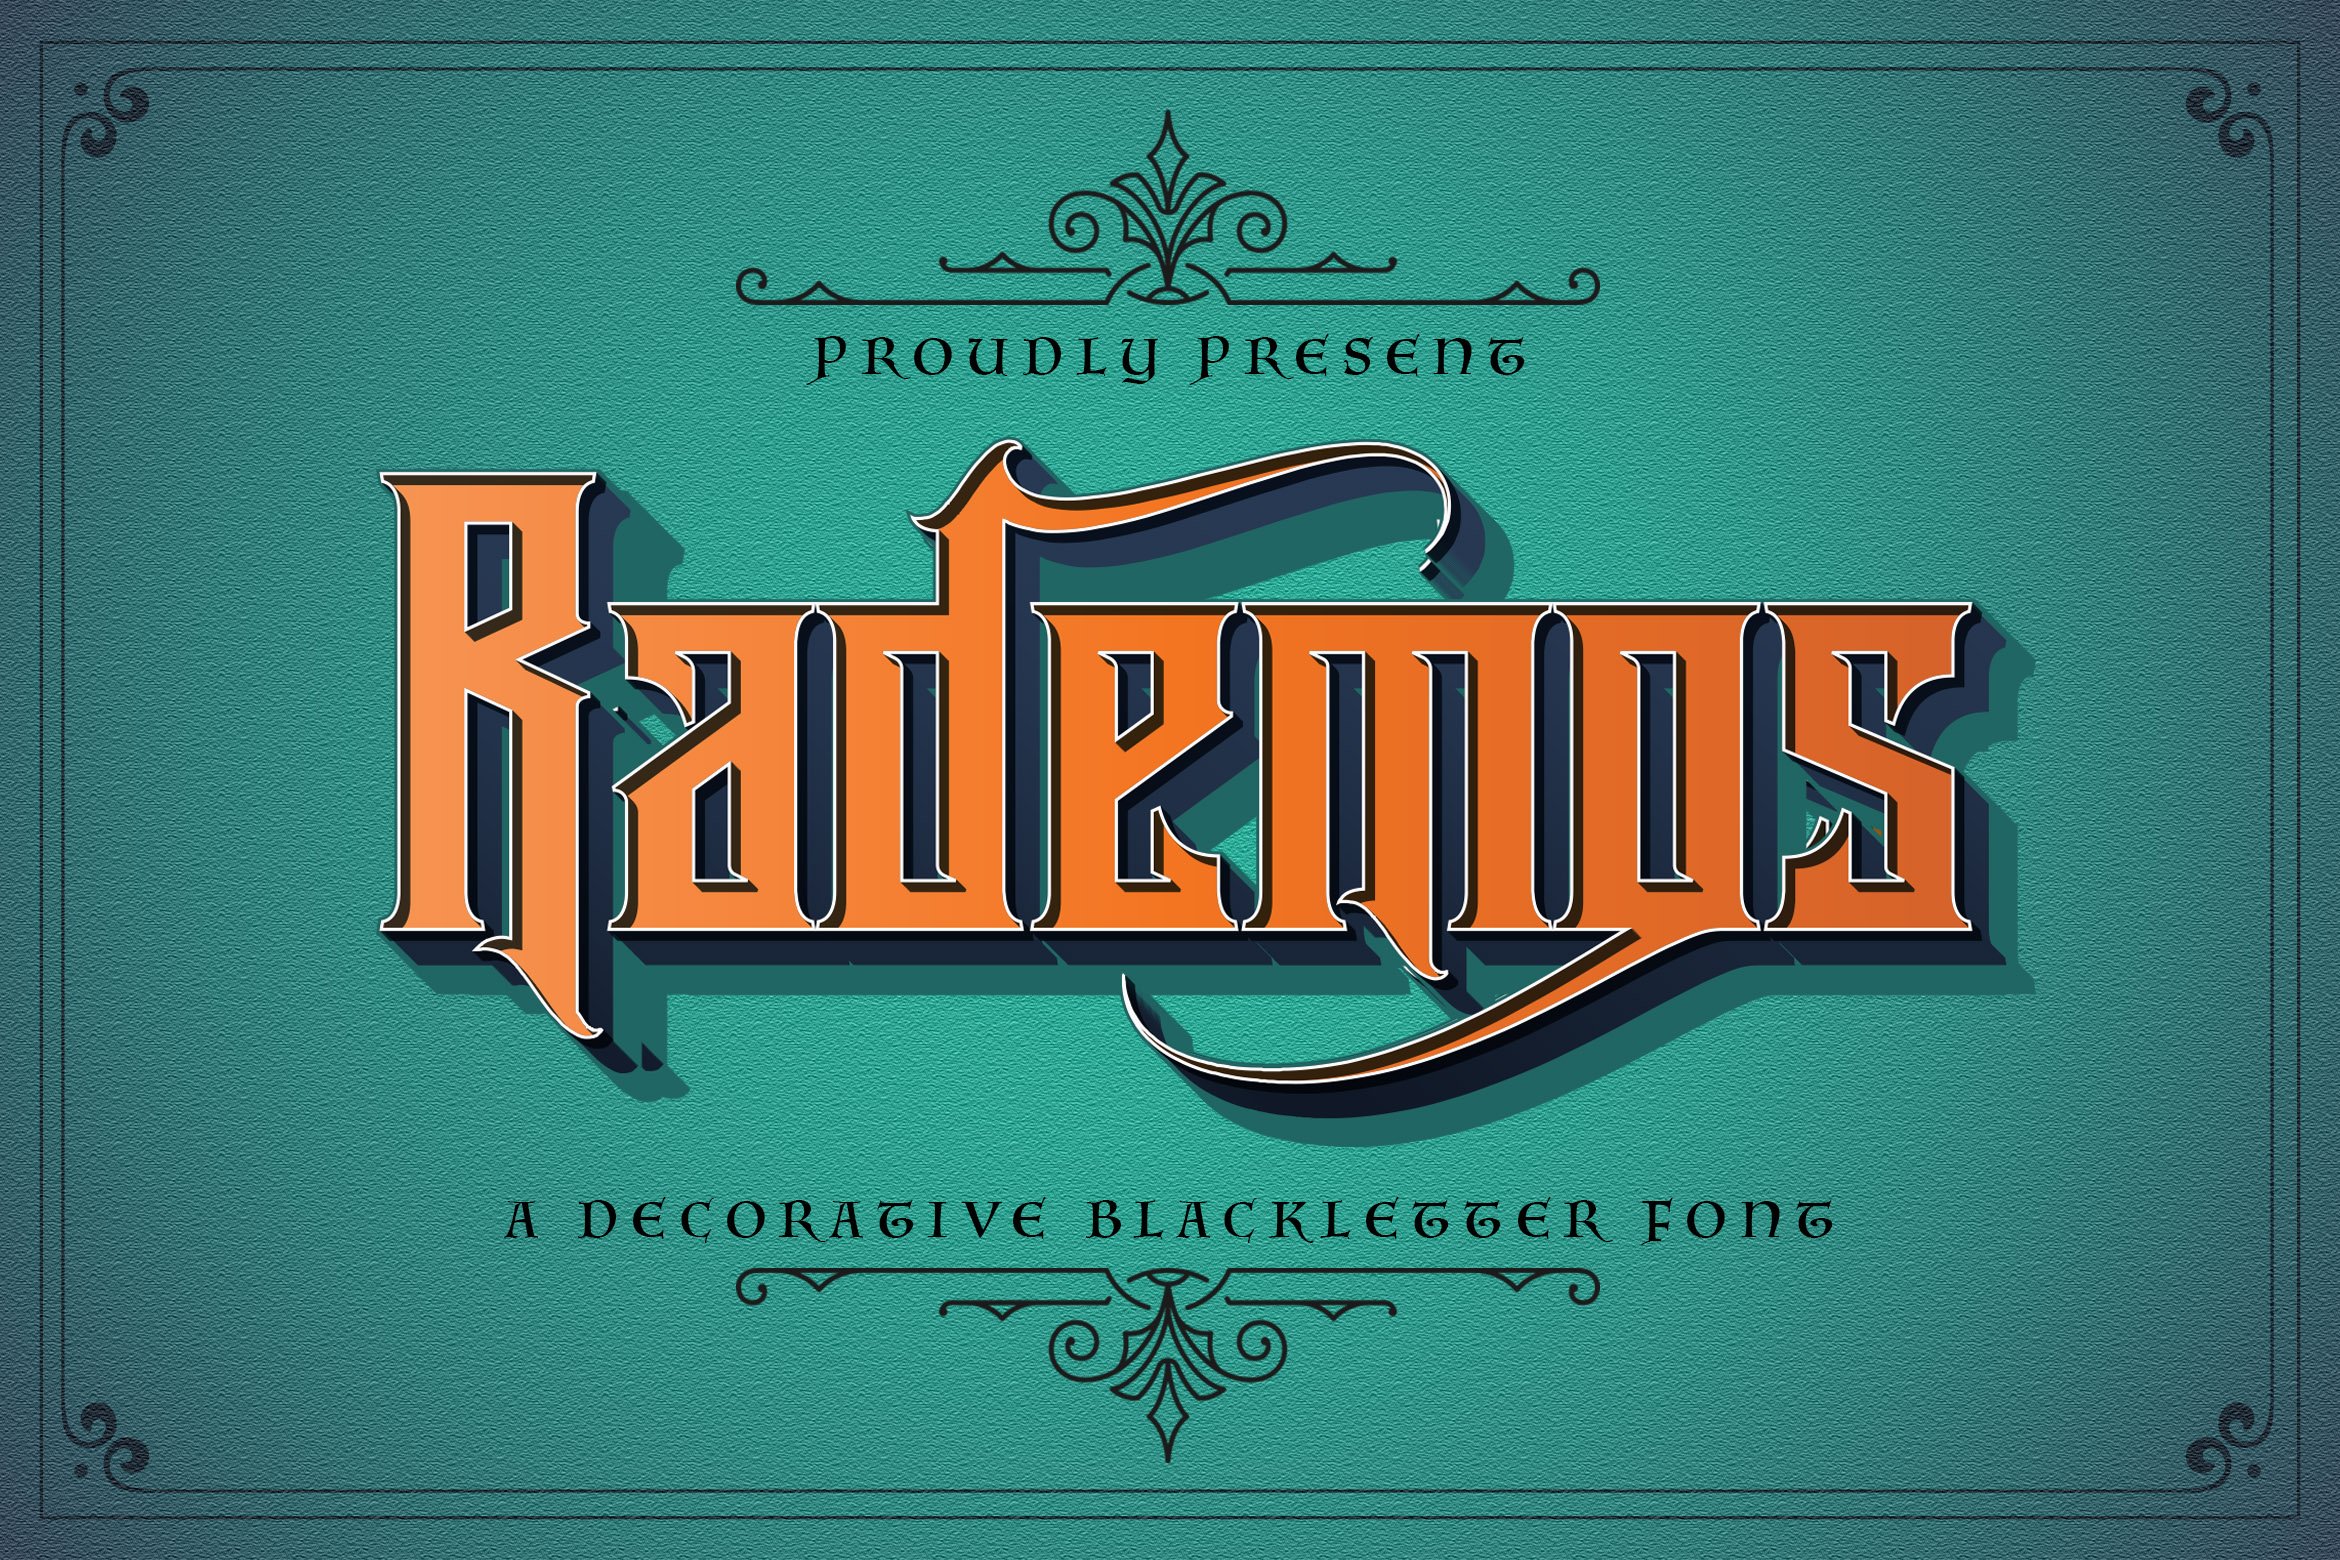 Rademos - Blackletter Font cover image.